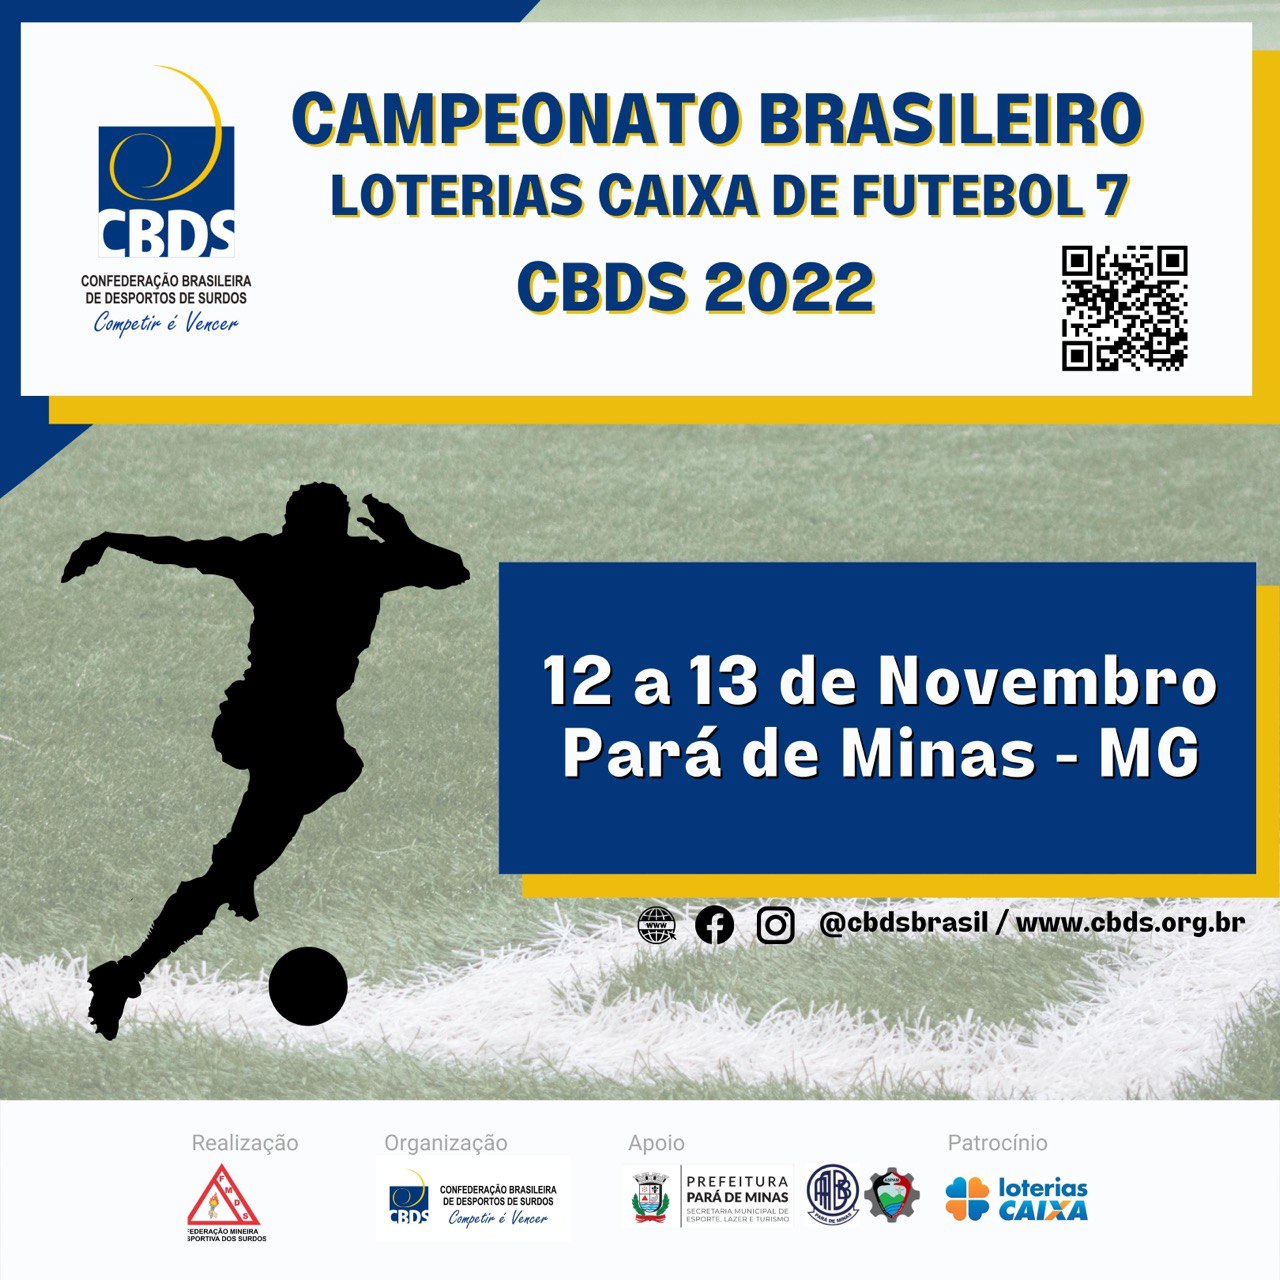 Campeonato Brasileiro Loterias Caixa de Futebol 7 2022